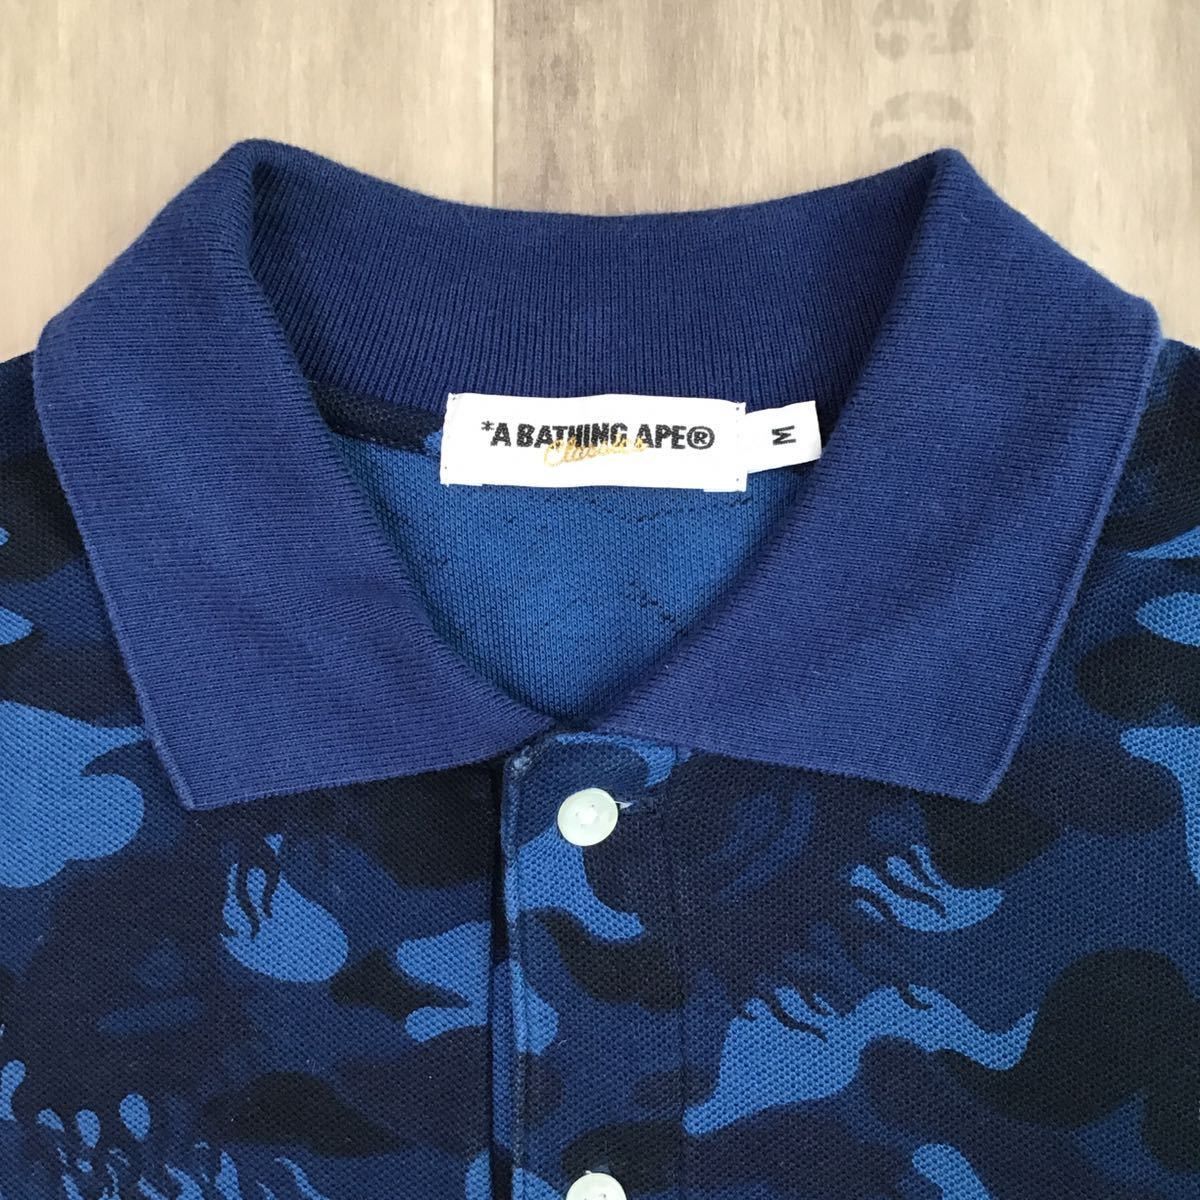 Bape BAPE fire camo Polo shirt Blue Size US M / EU 48-50 / 2 - 2 Preview